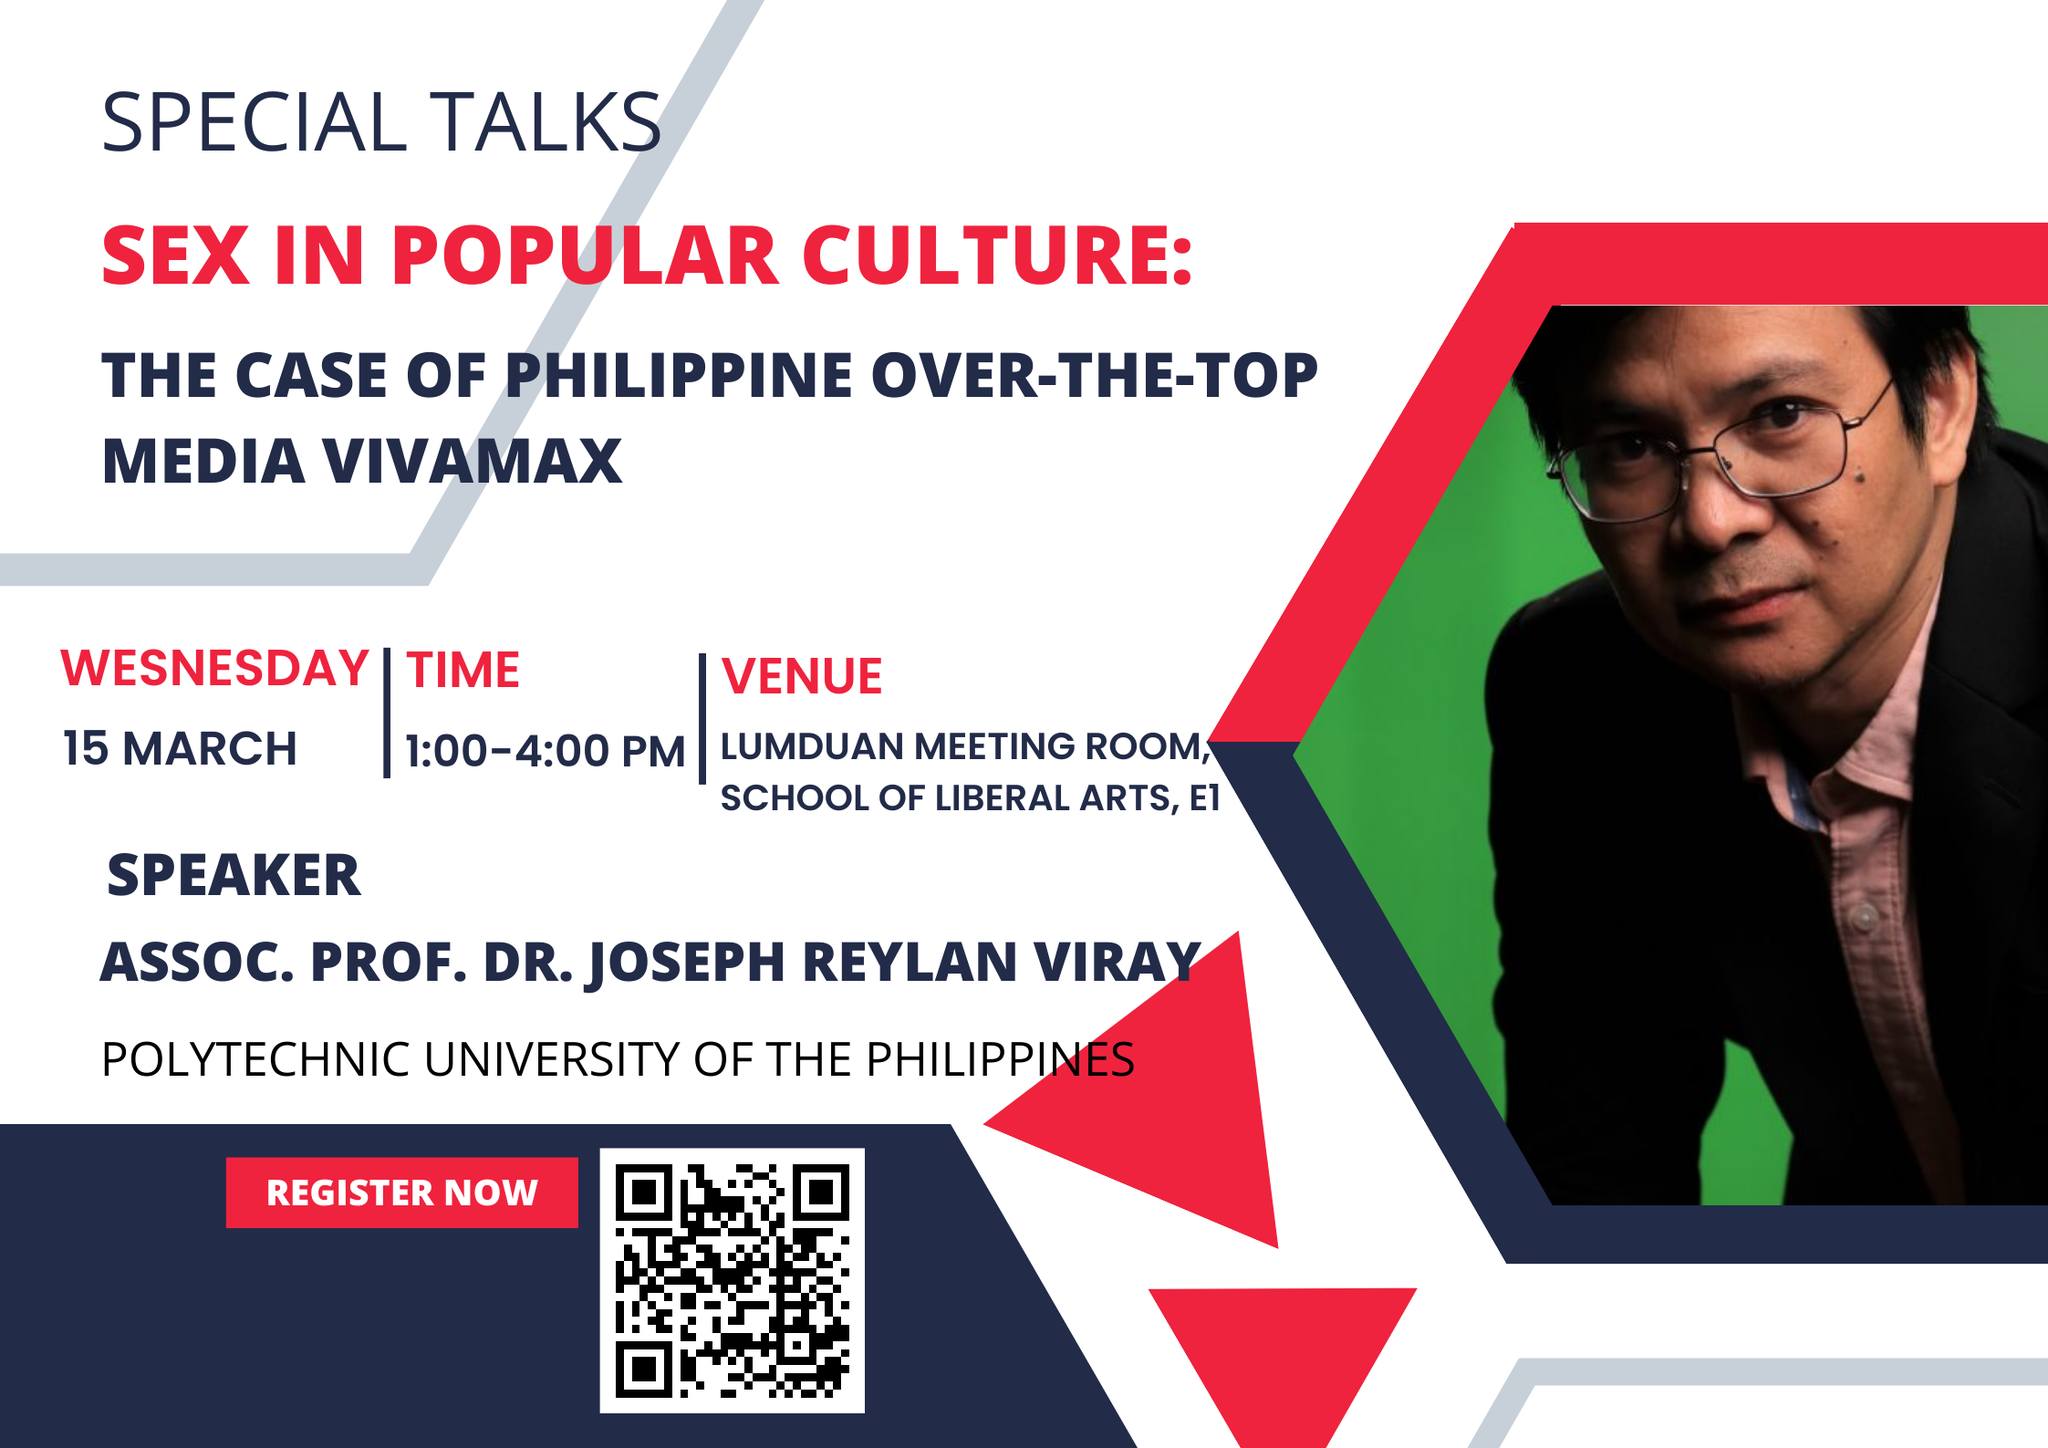 สนว.ศิลปศาสตร์ขอเชิญเข้าร่วมกิจกรรม Special talk “Sex in Popular Culture: The Case of Philippine Over-The-Top media Vivamax” 